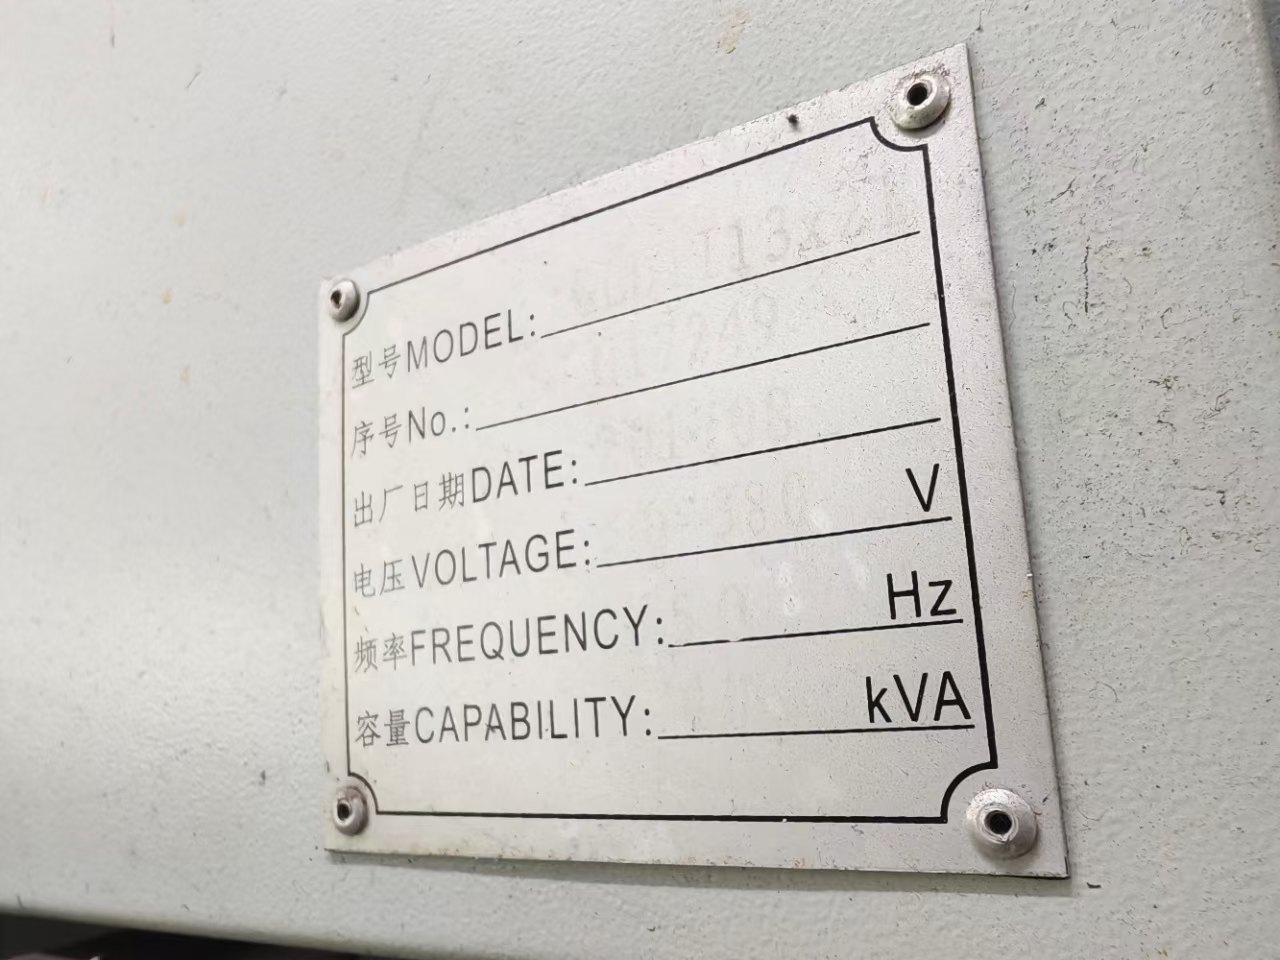 海天2013龙门加工中心
发那科MF系统
两线一硬轨道
BT5.